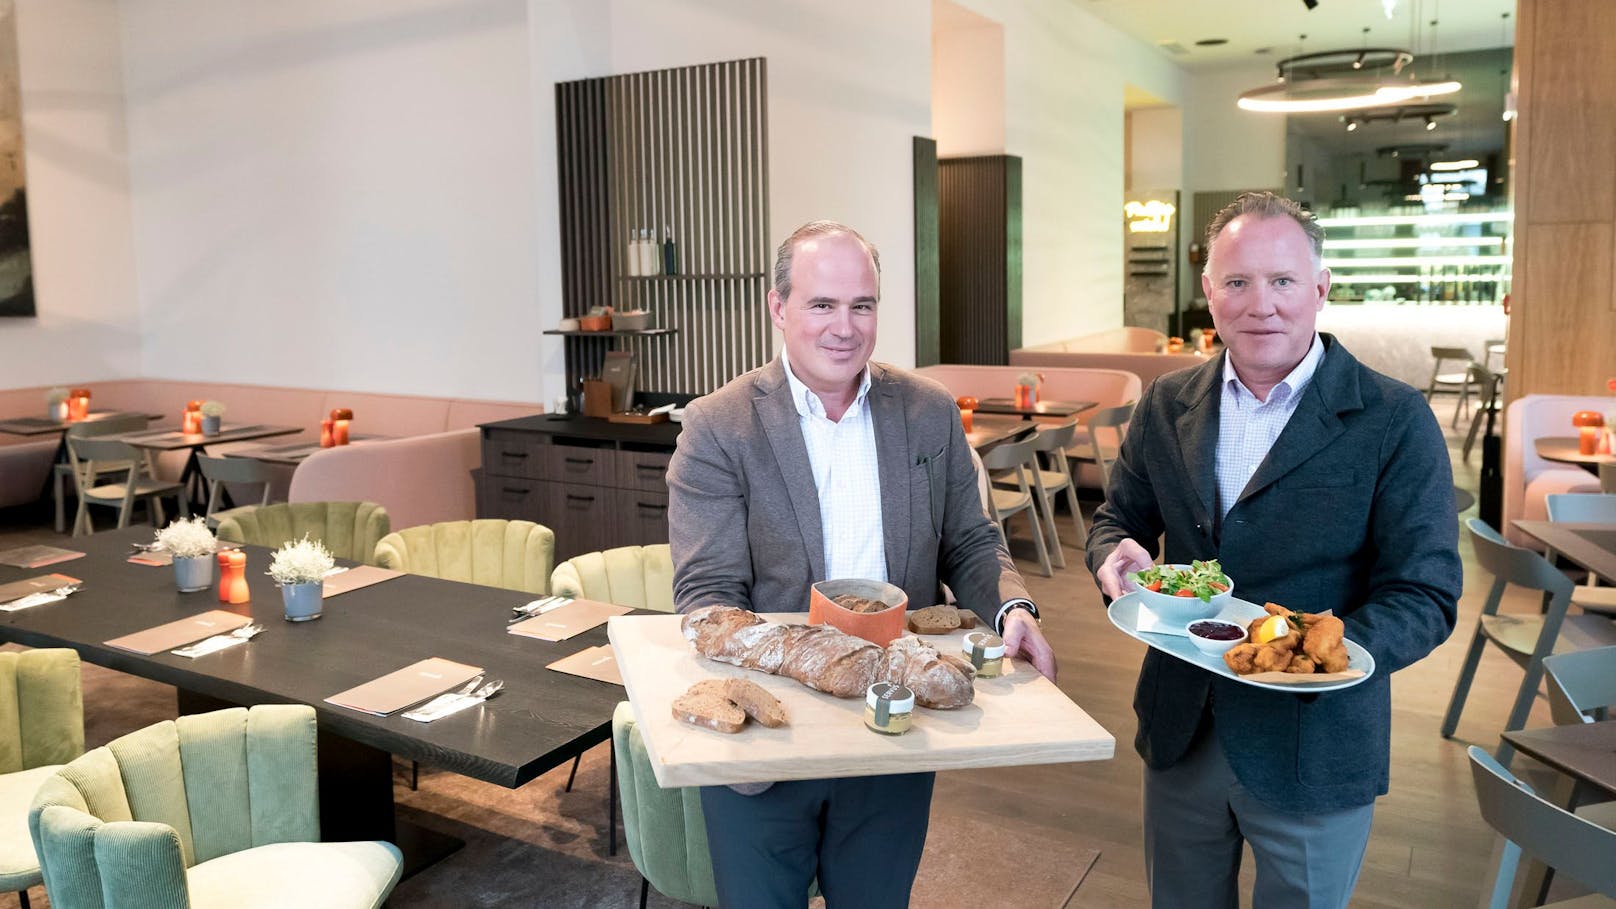 Österreichische Küche ins Heute übersetzt: Die beiden Gründer Alexander Schwedenmann und Kevin Patrick Nedoluha mit ihrem Bestseller, dem Backhendl, und dem selbst gebackenen Brot.